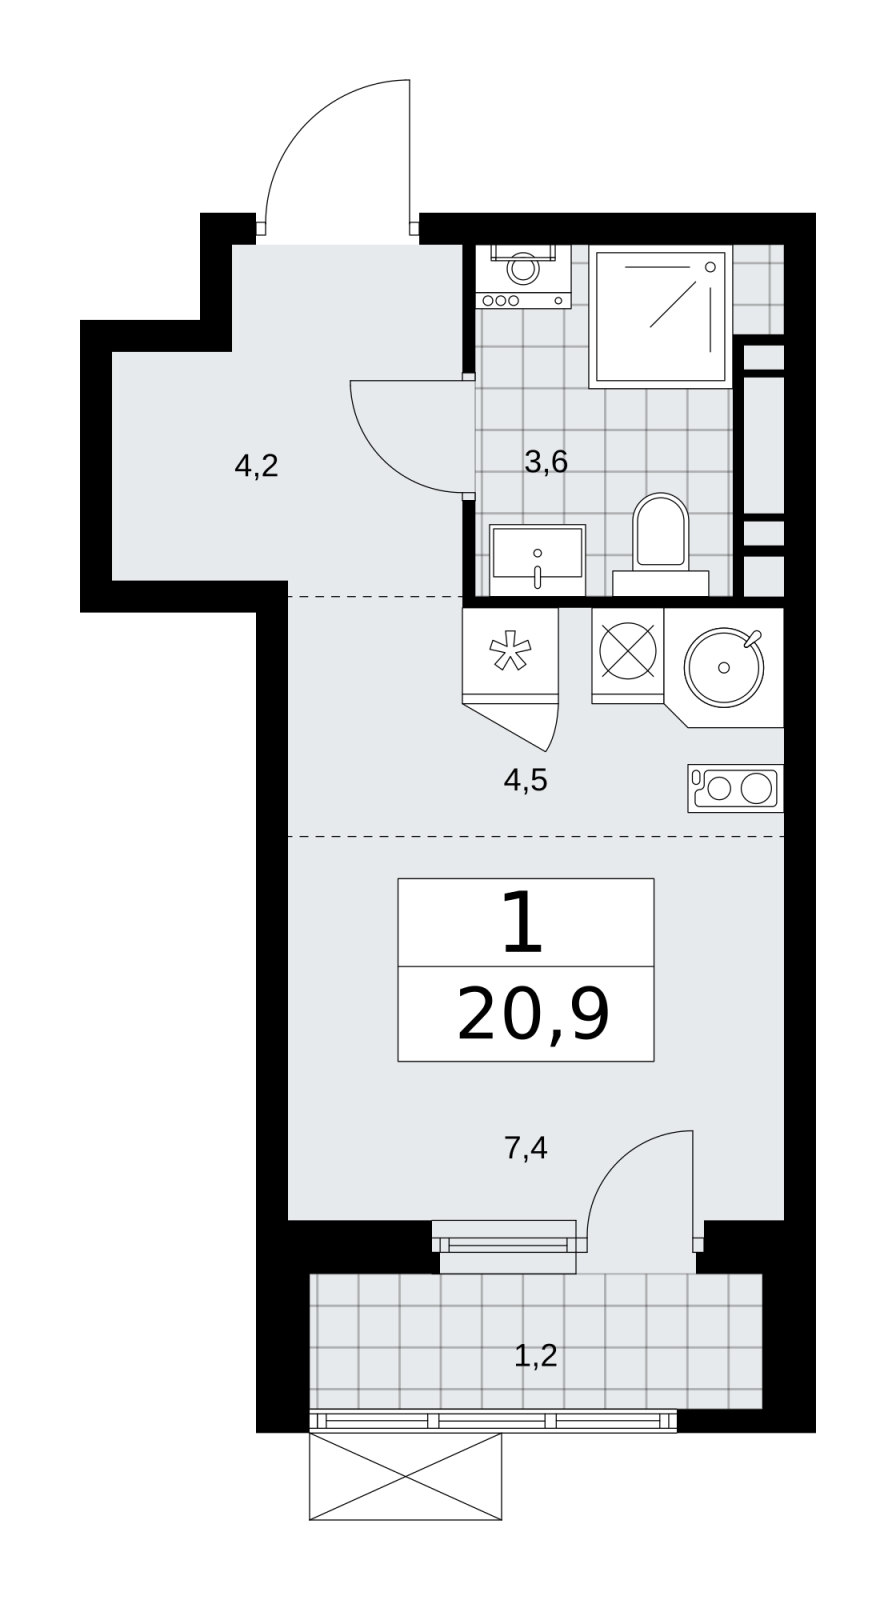 Продается 1-комн. квартира-студия в новом жилом комплексе, у метро